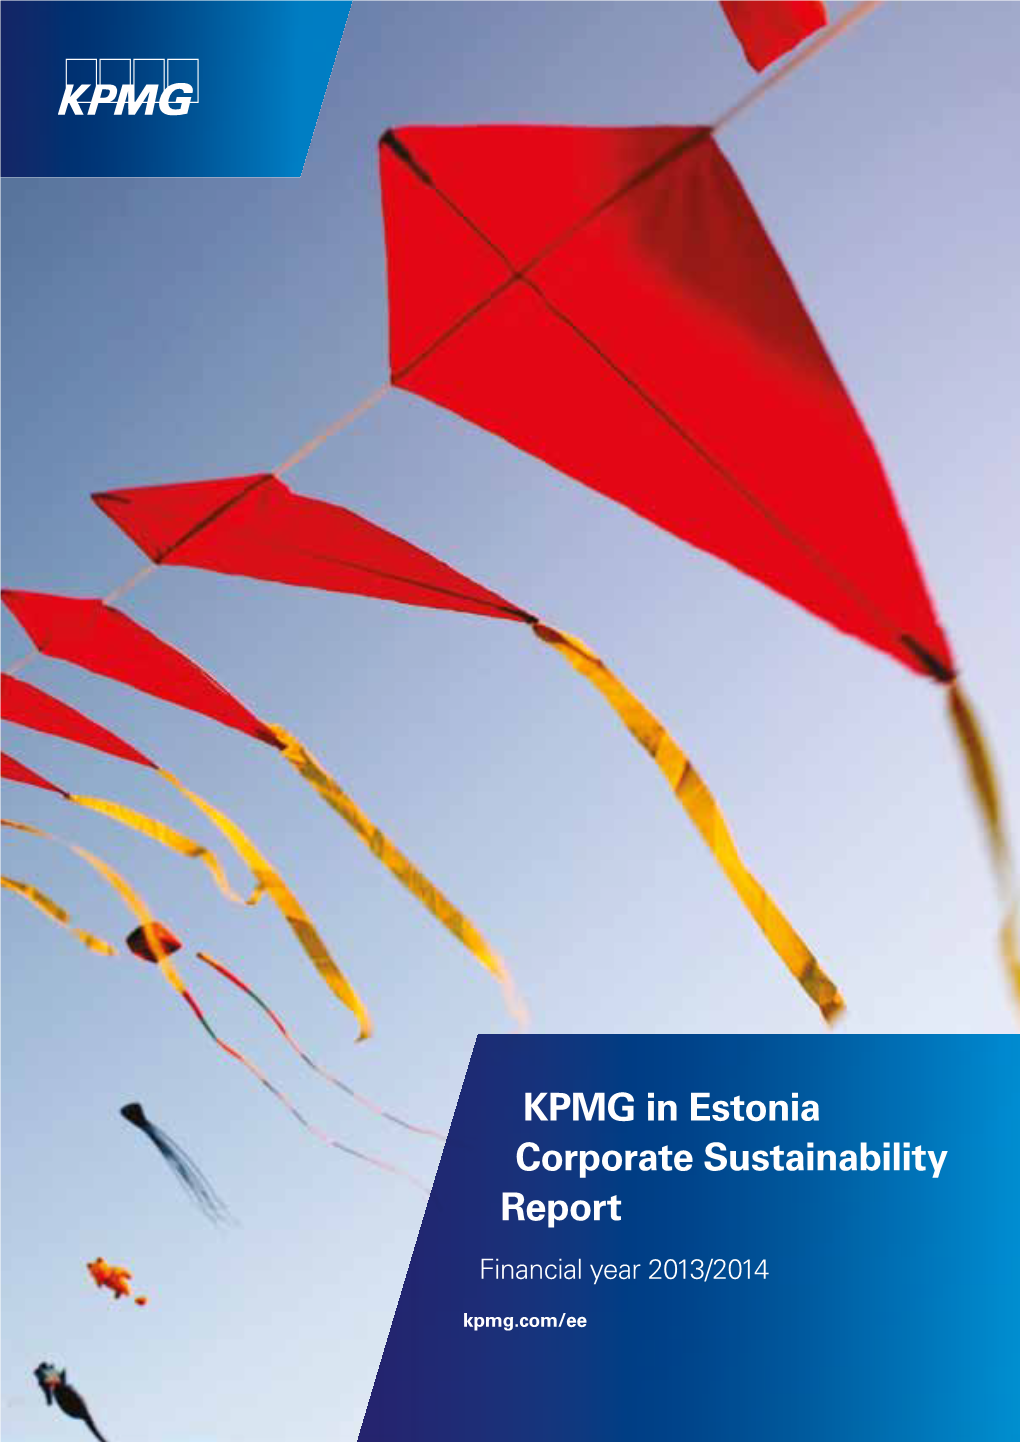 KPMG in Estonia Corporate Sustainability Report | A